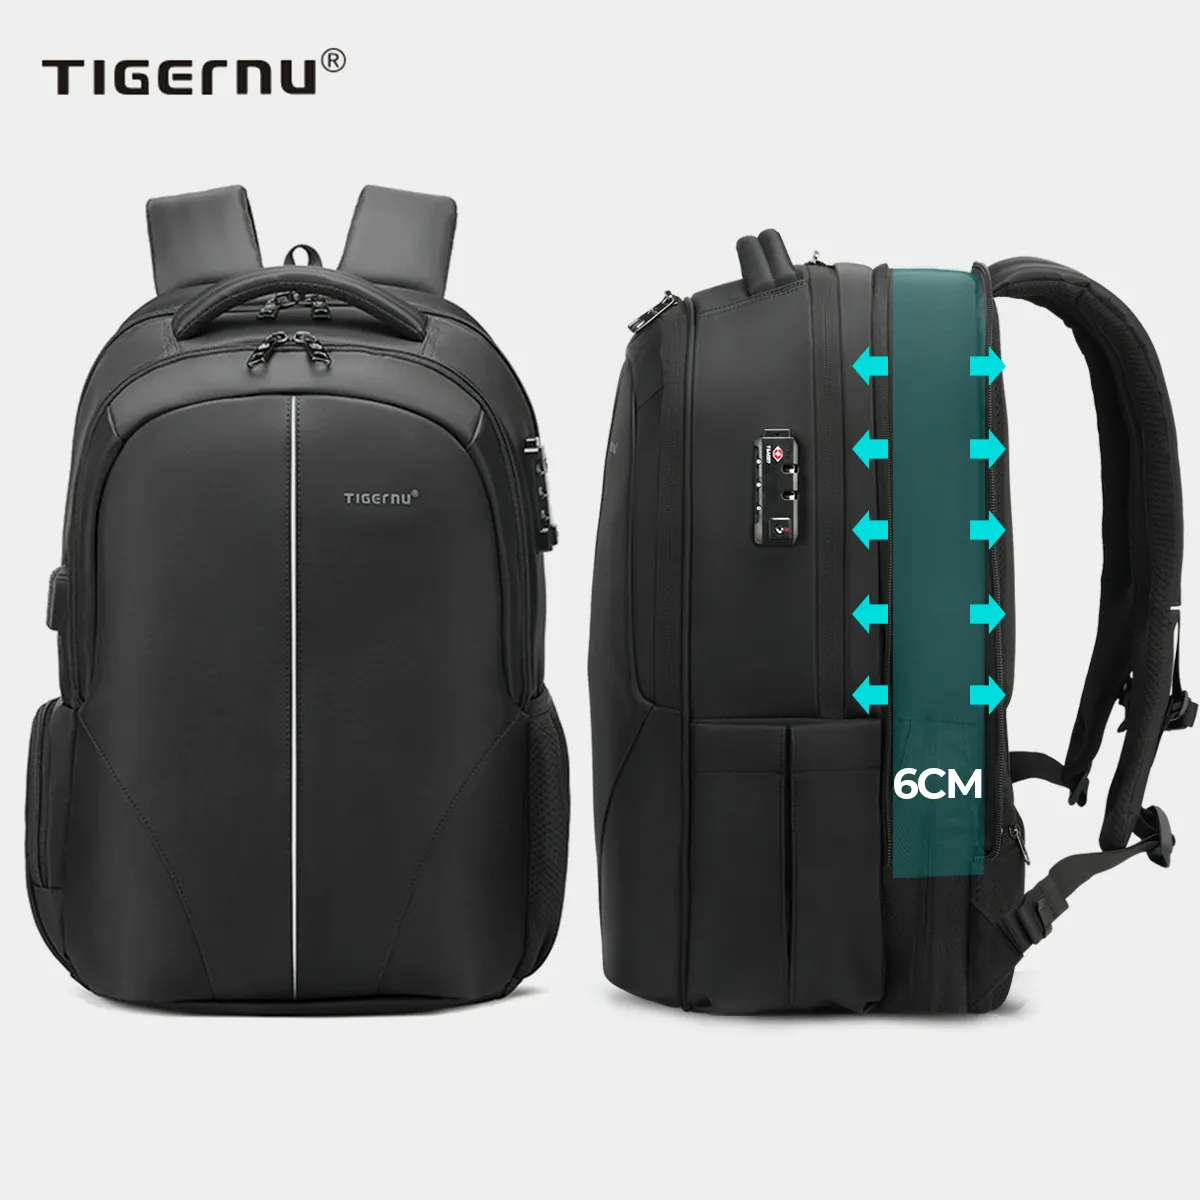 Tigernu sac de voyage extensible sac pour ordinateur portable sacs à dos mochila antirrobo étanche TSA serrure affaires sacs à dos pour ordinateur portable pour homme